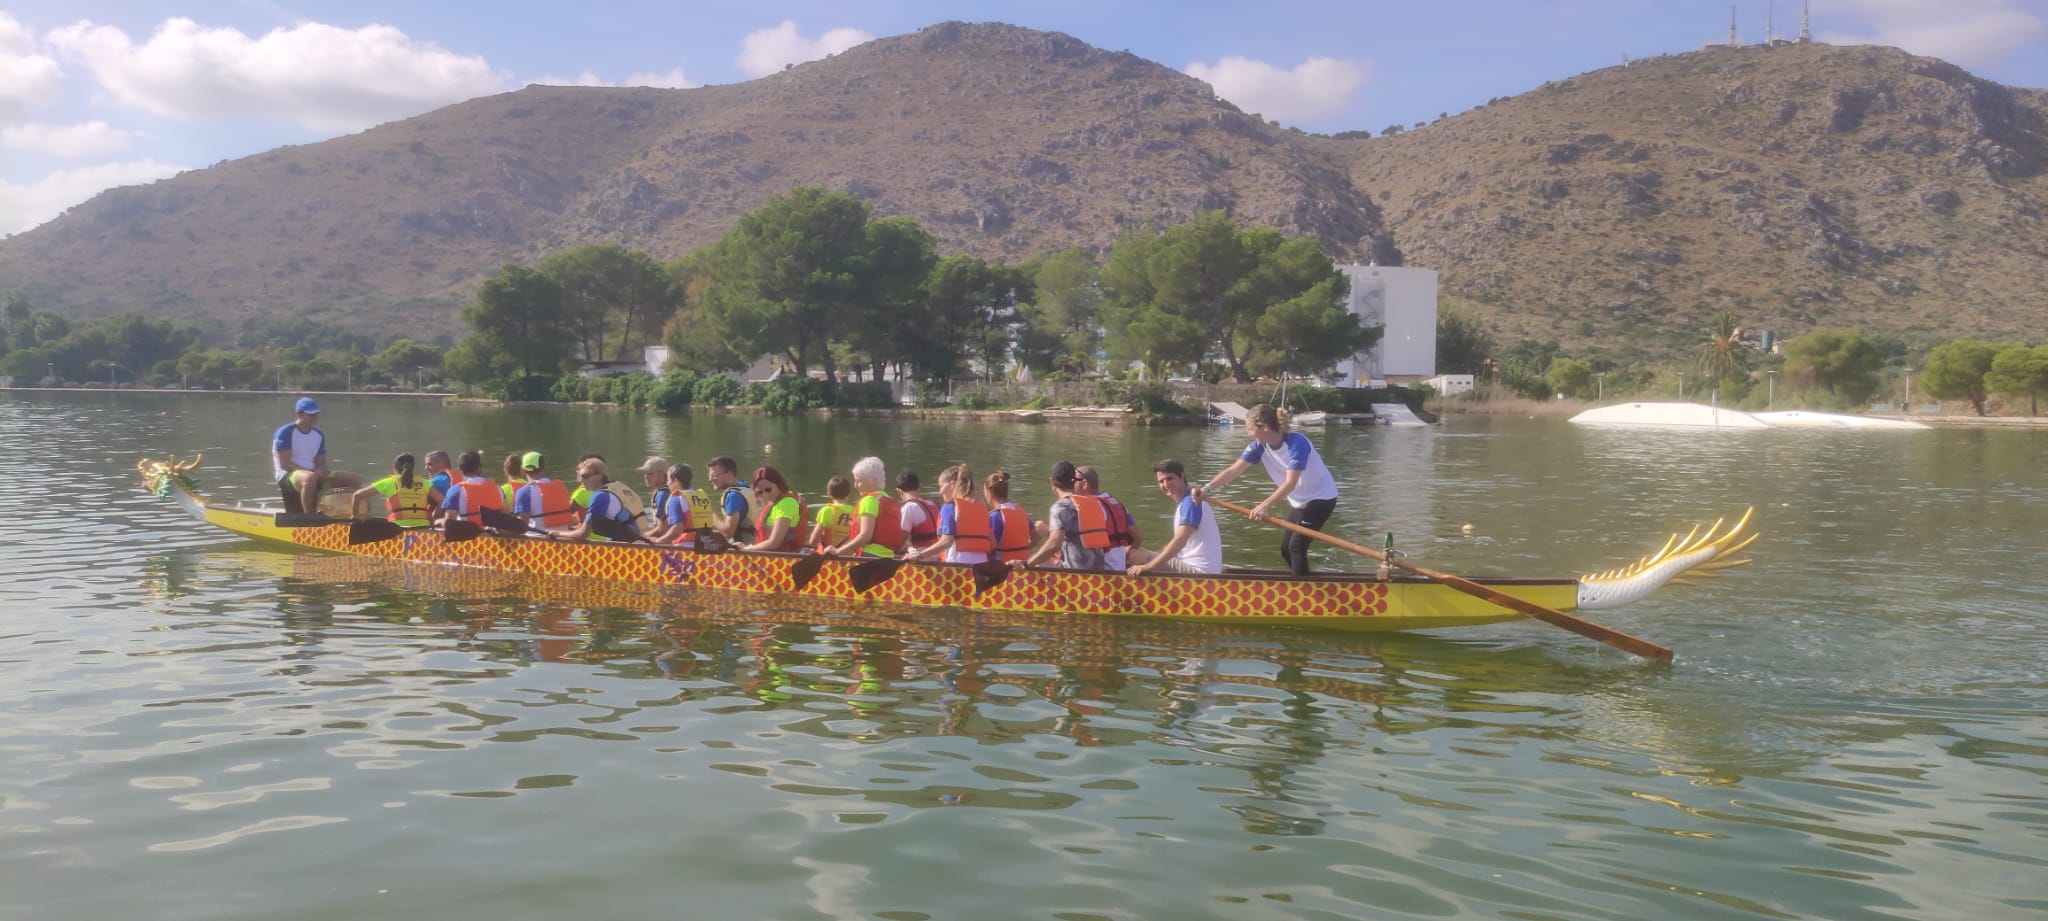 Dragon Boats, el nou esport que a partir d'ara es pot practicar a l'Estany des Pont d'Alcúdia